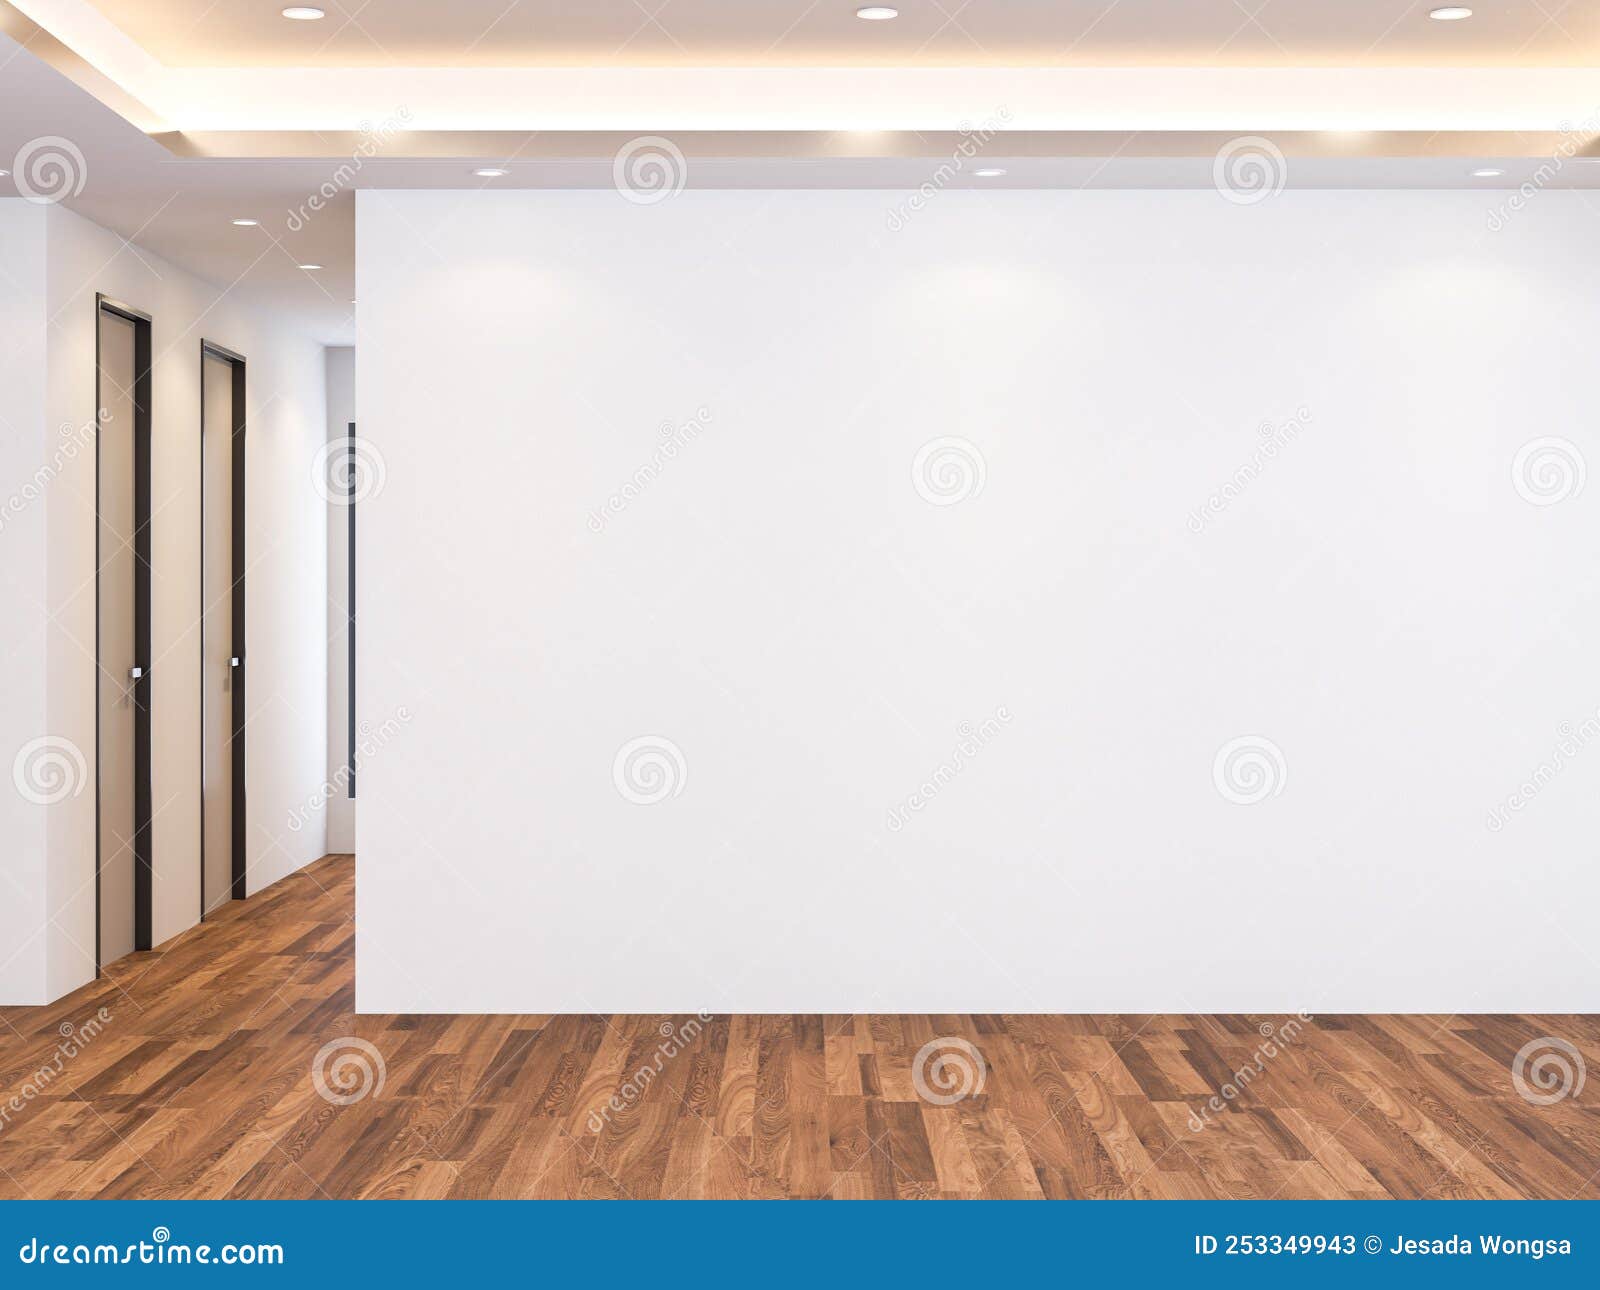 Hãy đến và khám phá bức ảnh phông mô phỏng tường màu trắng trống, tường trắng trống rỗng của chúng tôi! Với cách cài đặt tốt nhất, bức ảnh sẽ mang đến cho bạn trải nghiệm tuyệt vời nhất về một không gian trống rộng và thoáng đãng.